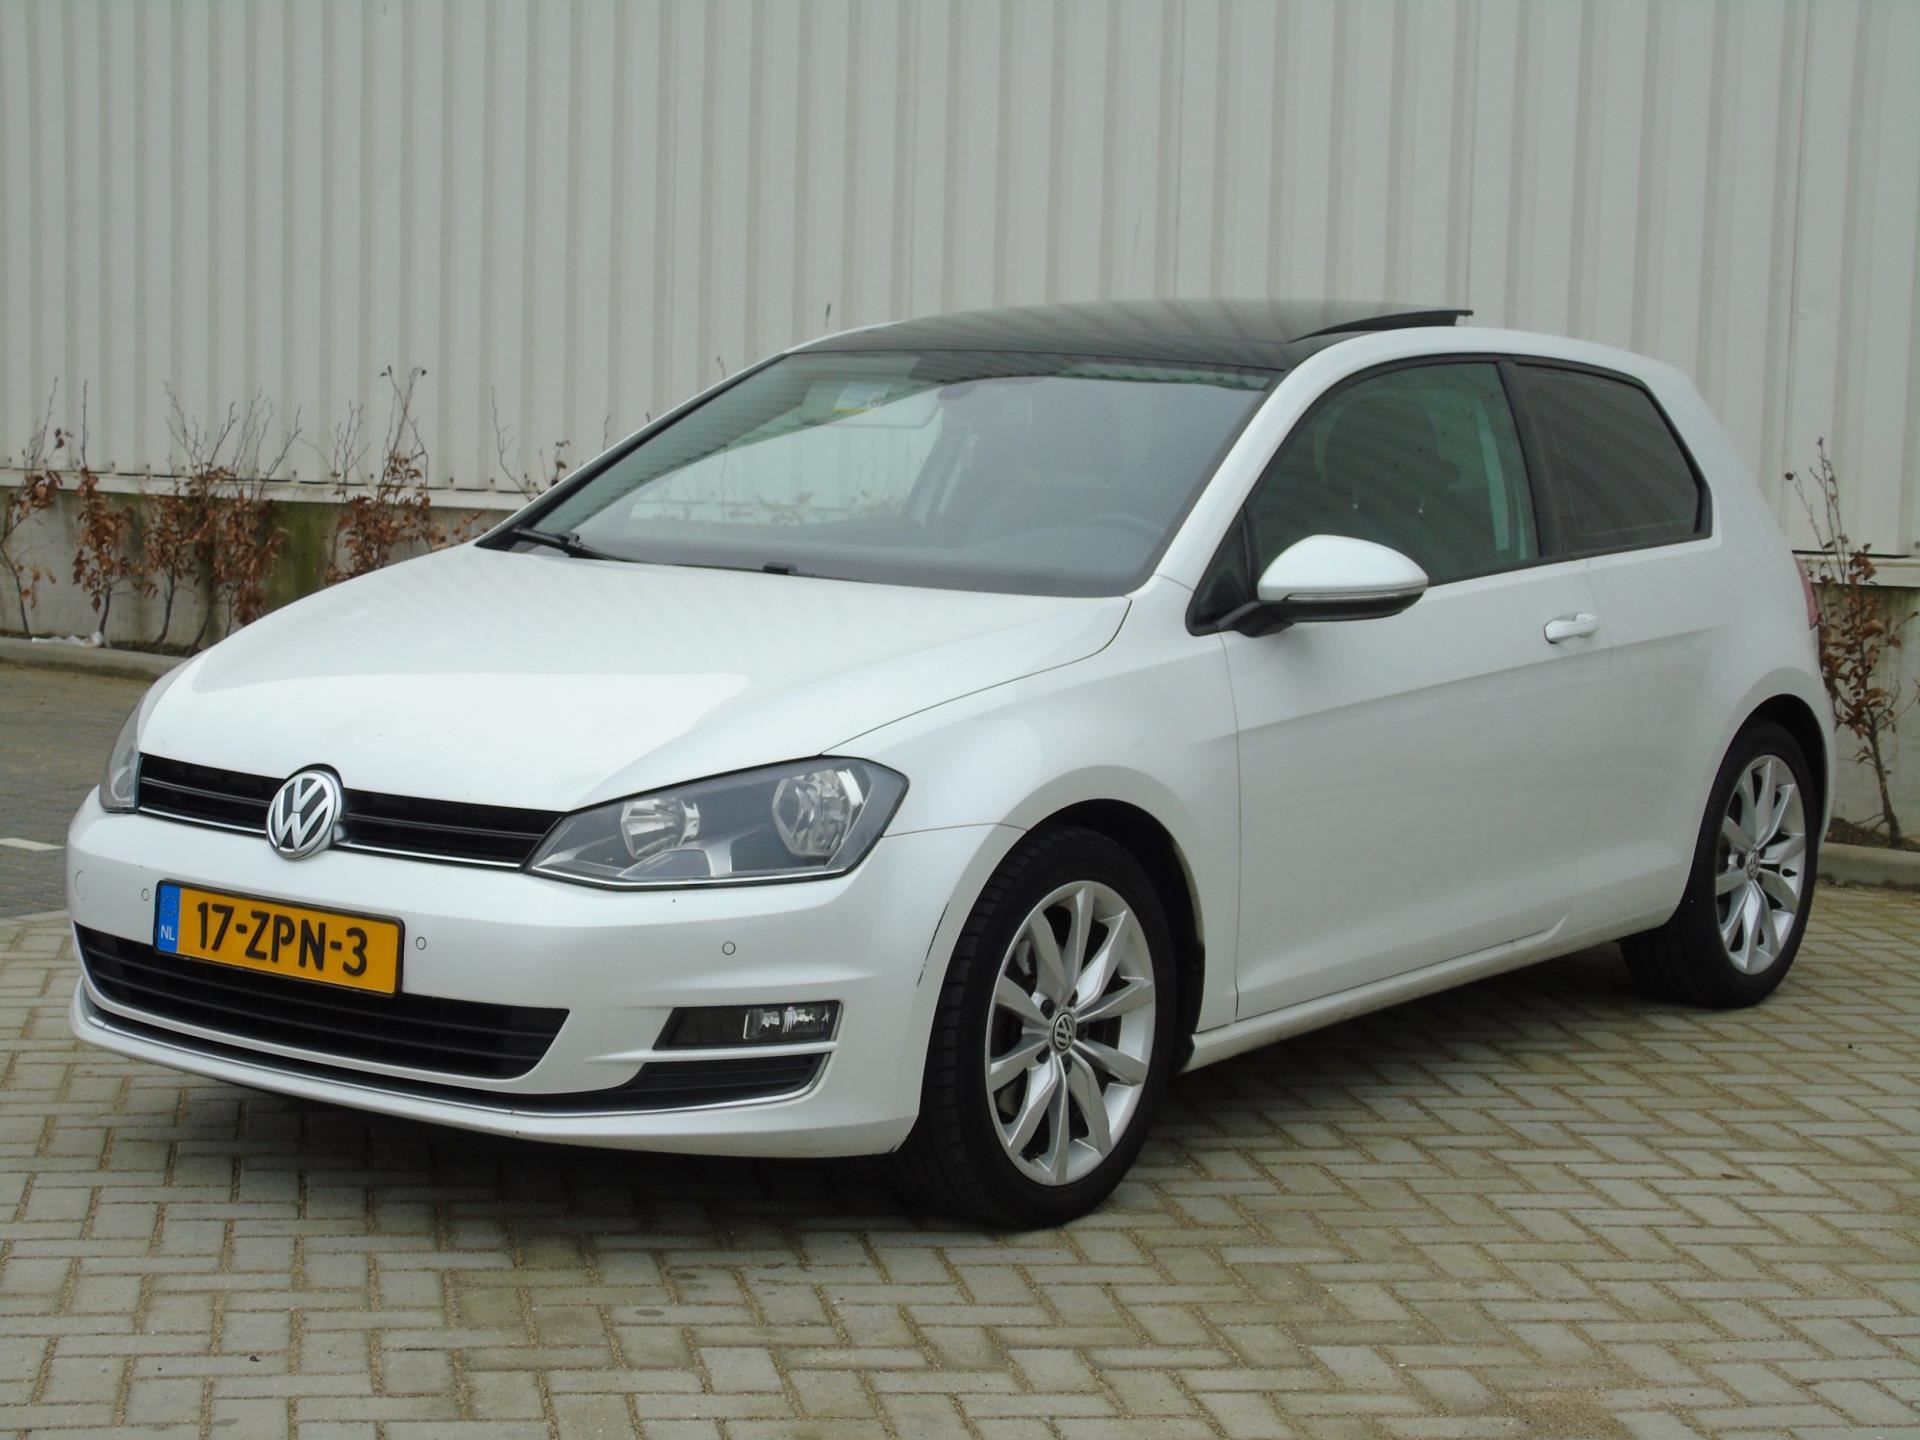 Volkswagen Golf occasion - van Dijk auto's